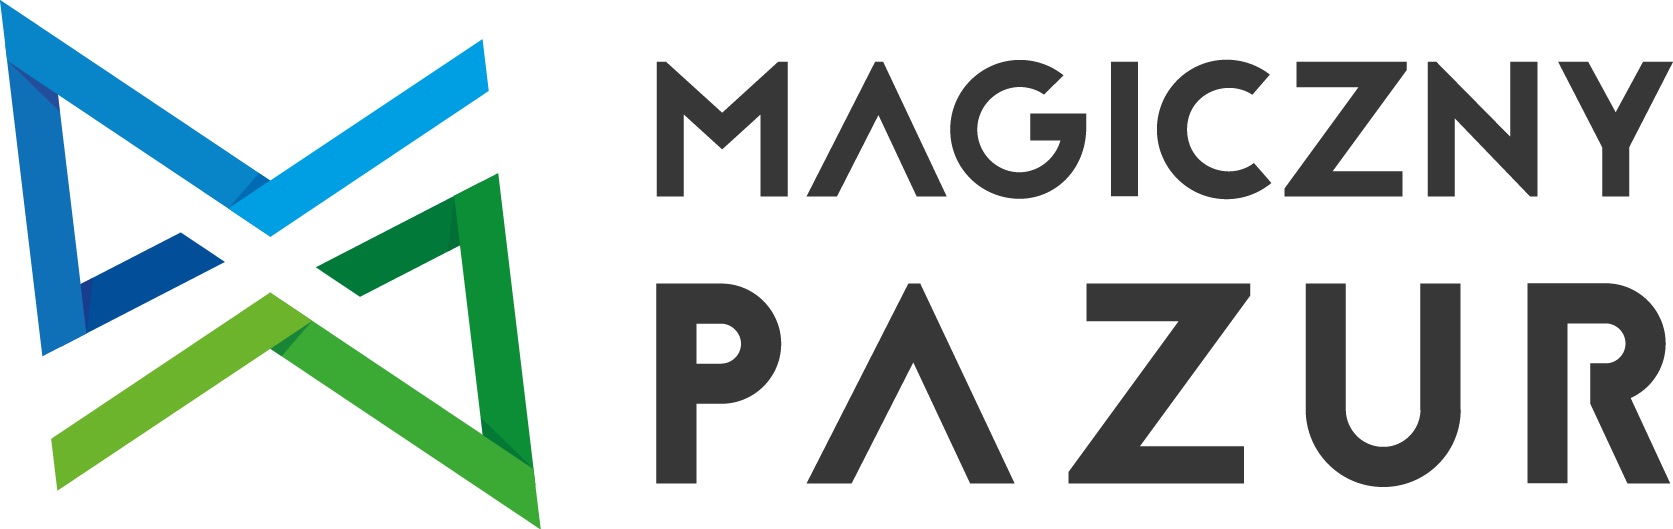 logo-Magiczny Pazur